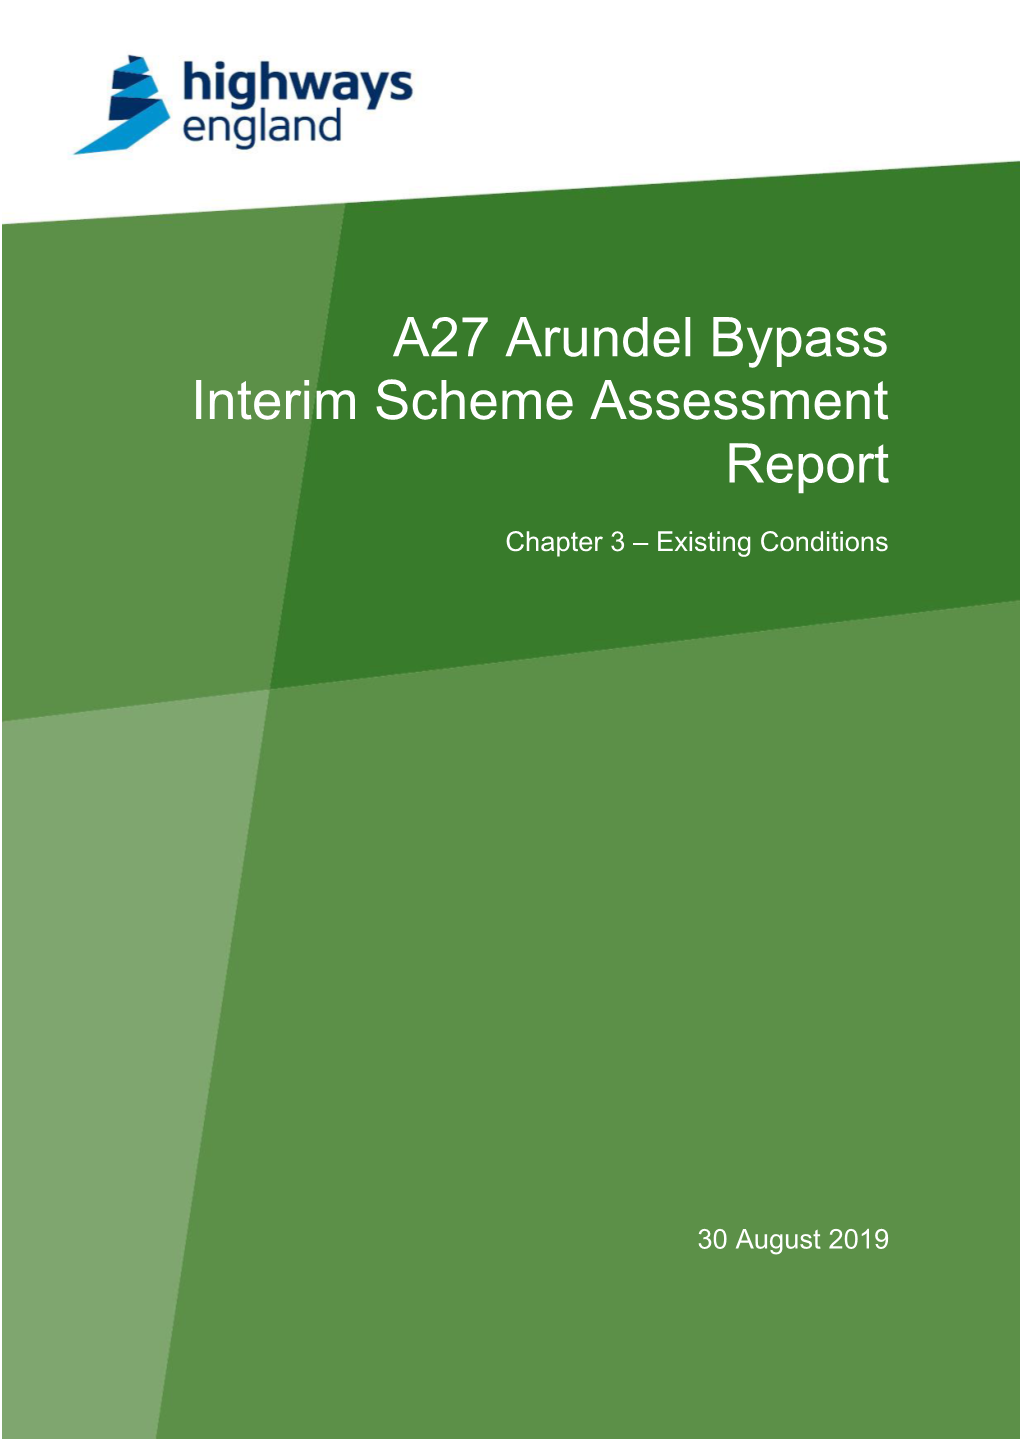 A27 Arundel Bypass Interim Scheme Assessment Report